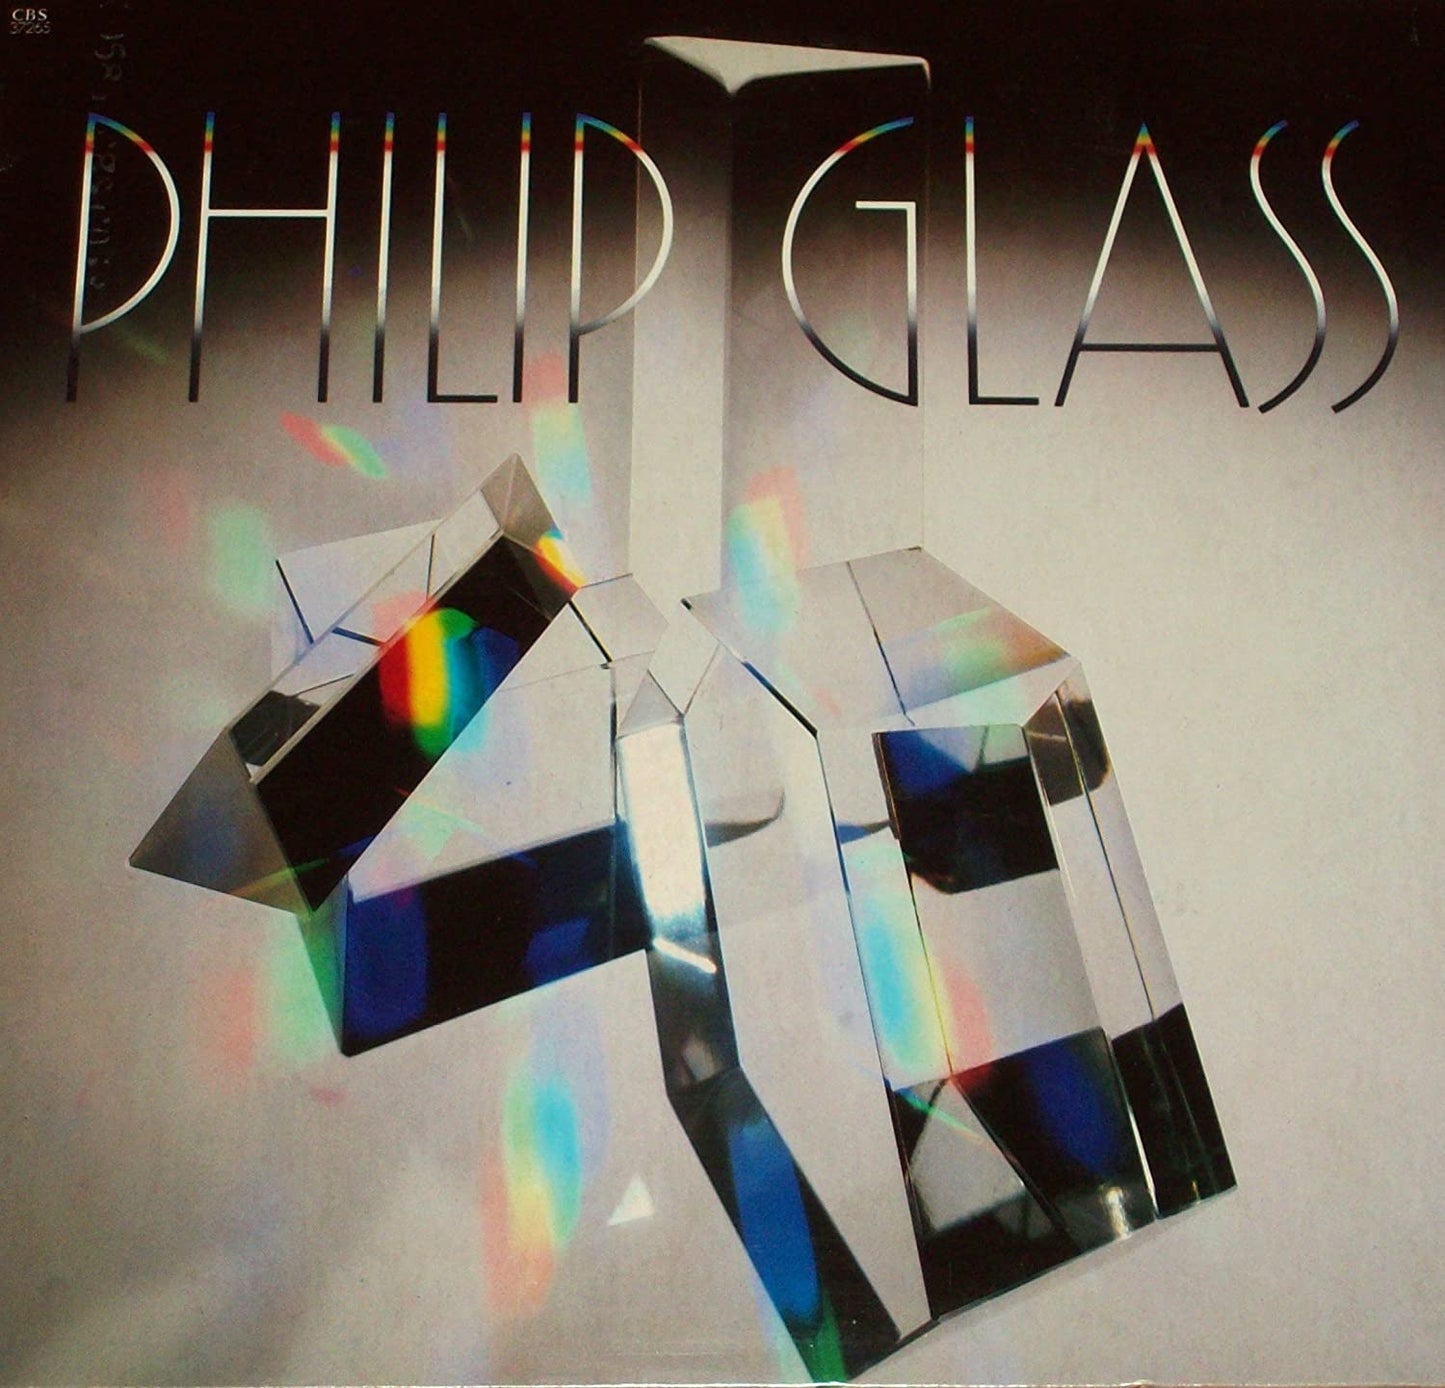 Philip Glass - GlassworksPhilip Glass - Glassworks (Audiophile Vinyl, Deluxe)